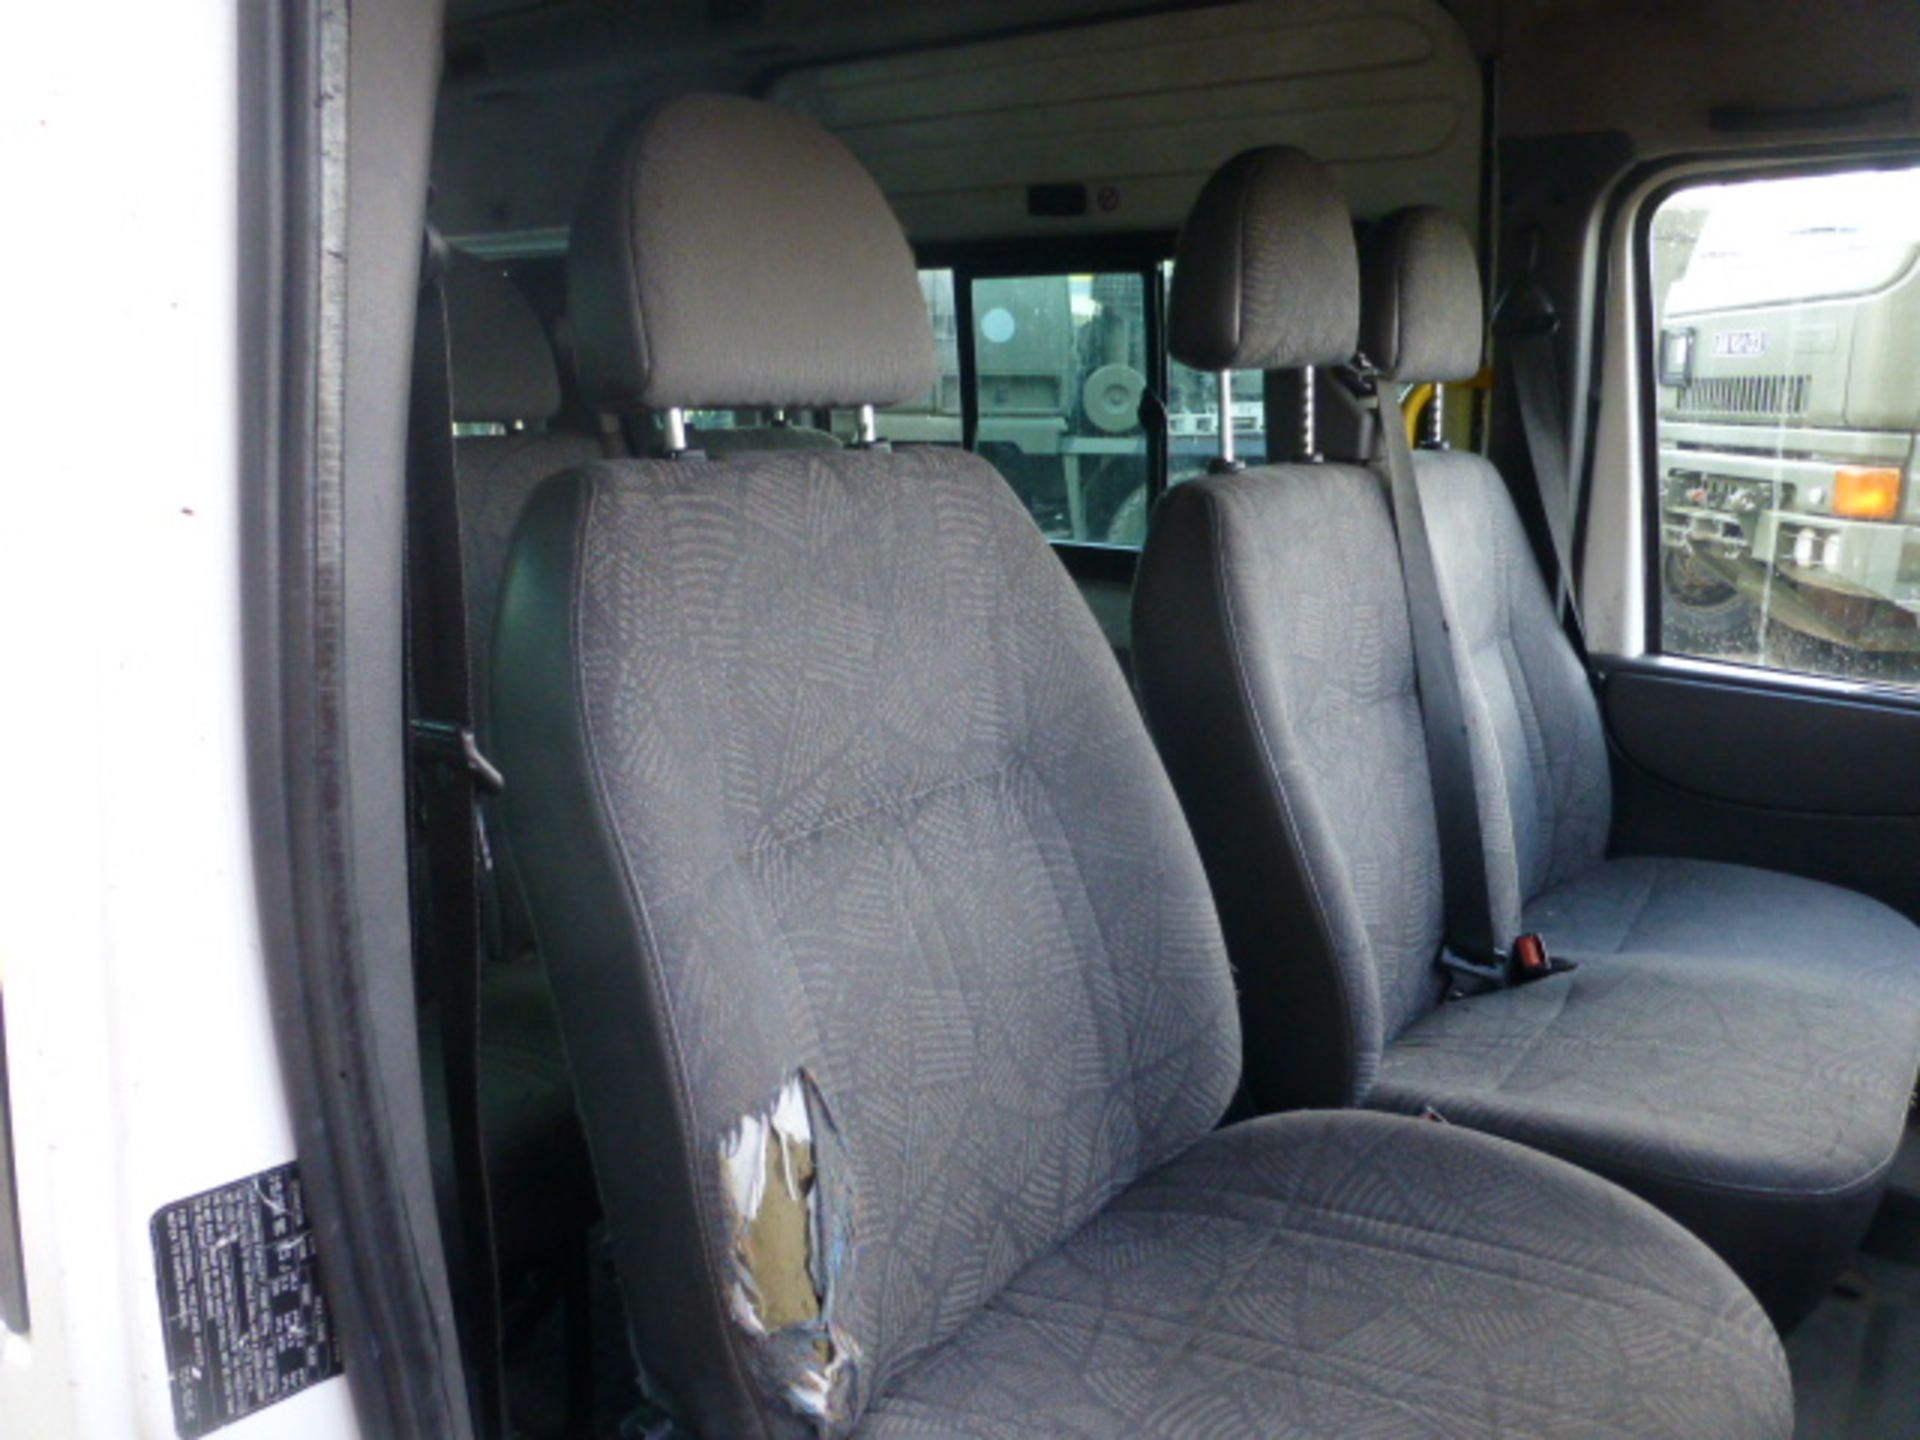 Ford Transit 11 Seat LWB Minibus - Image 10 of 19